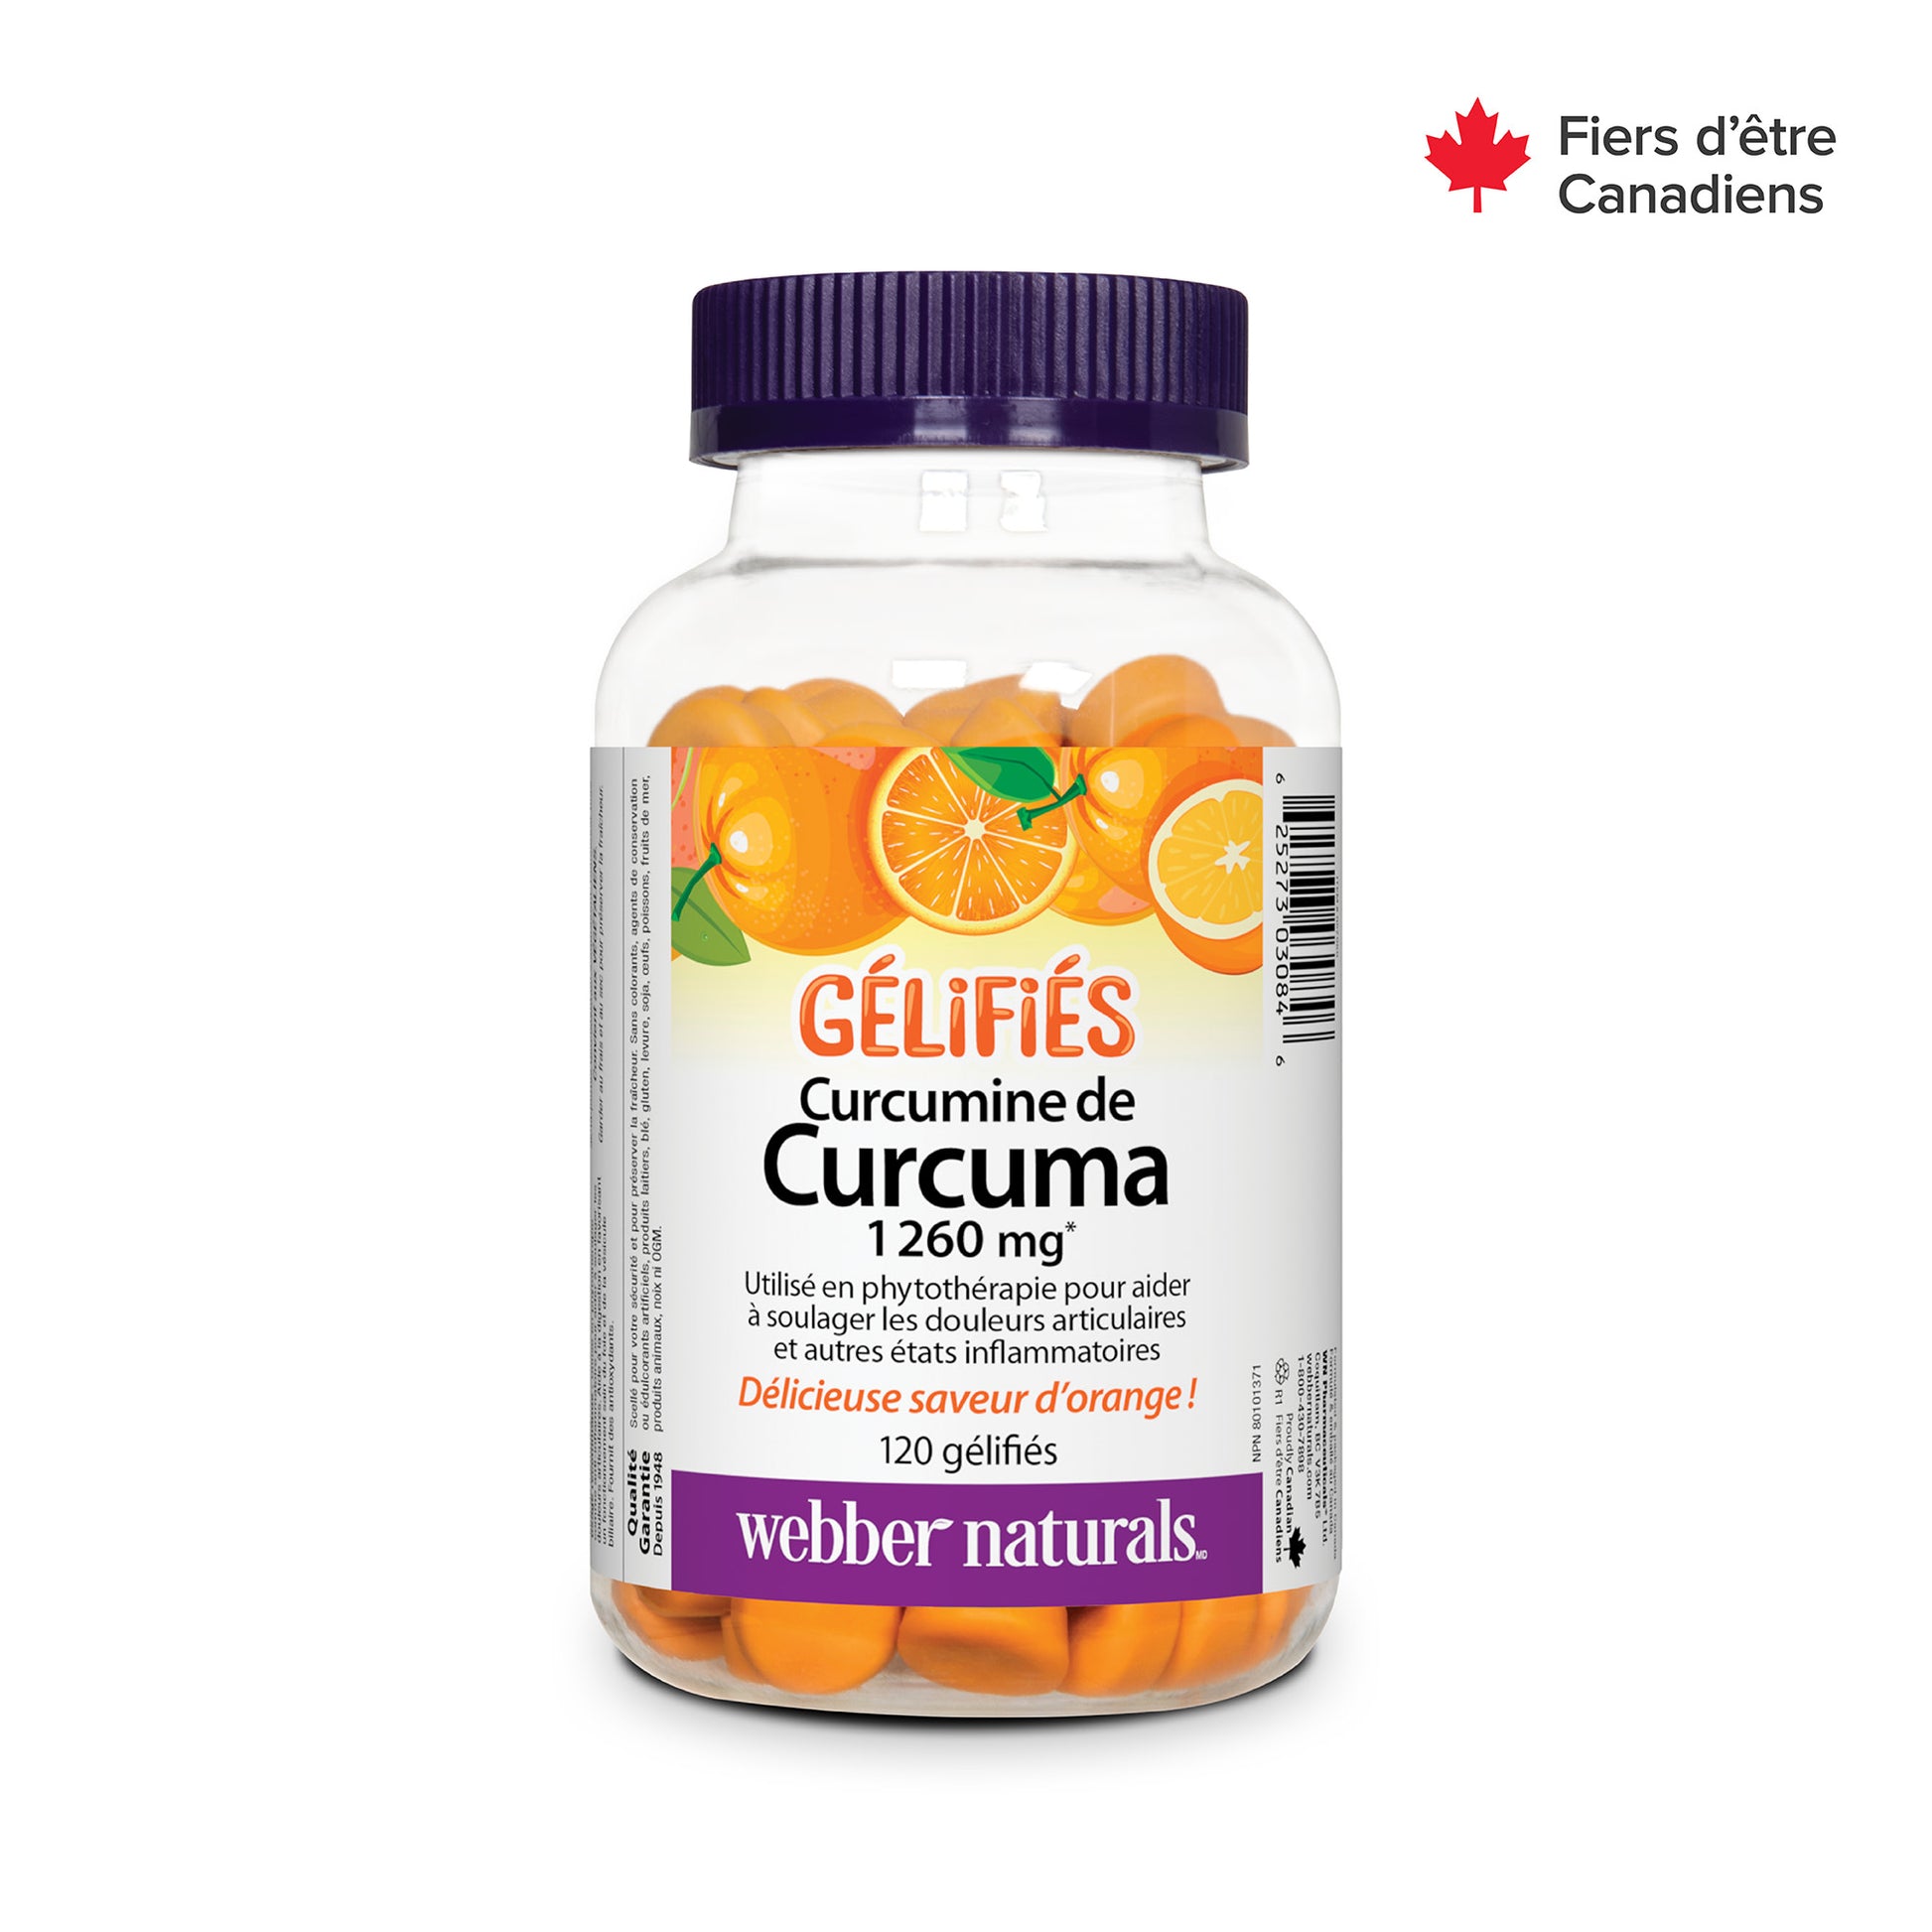 Turmeric Curcumin 1260 mg Orange for Webber Naturals|v|hi-res|WN3084